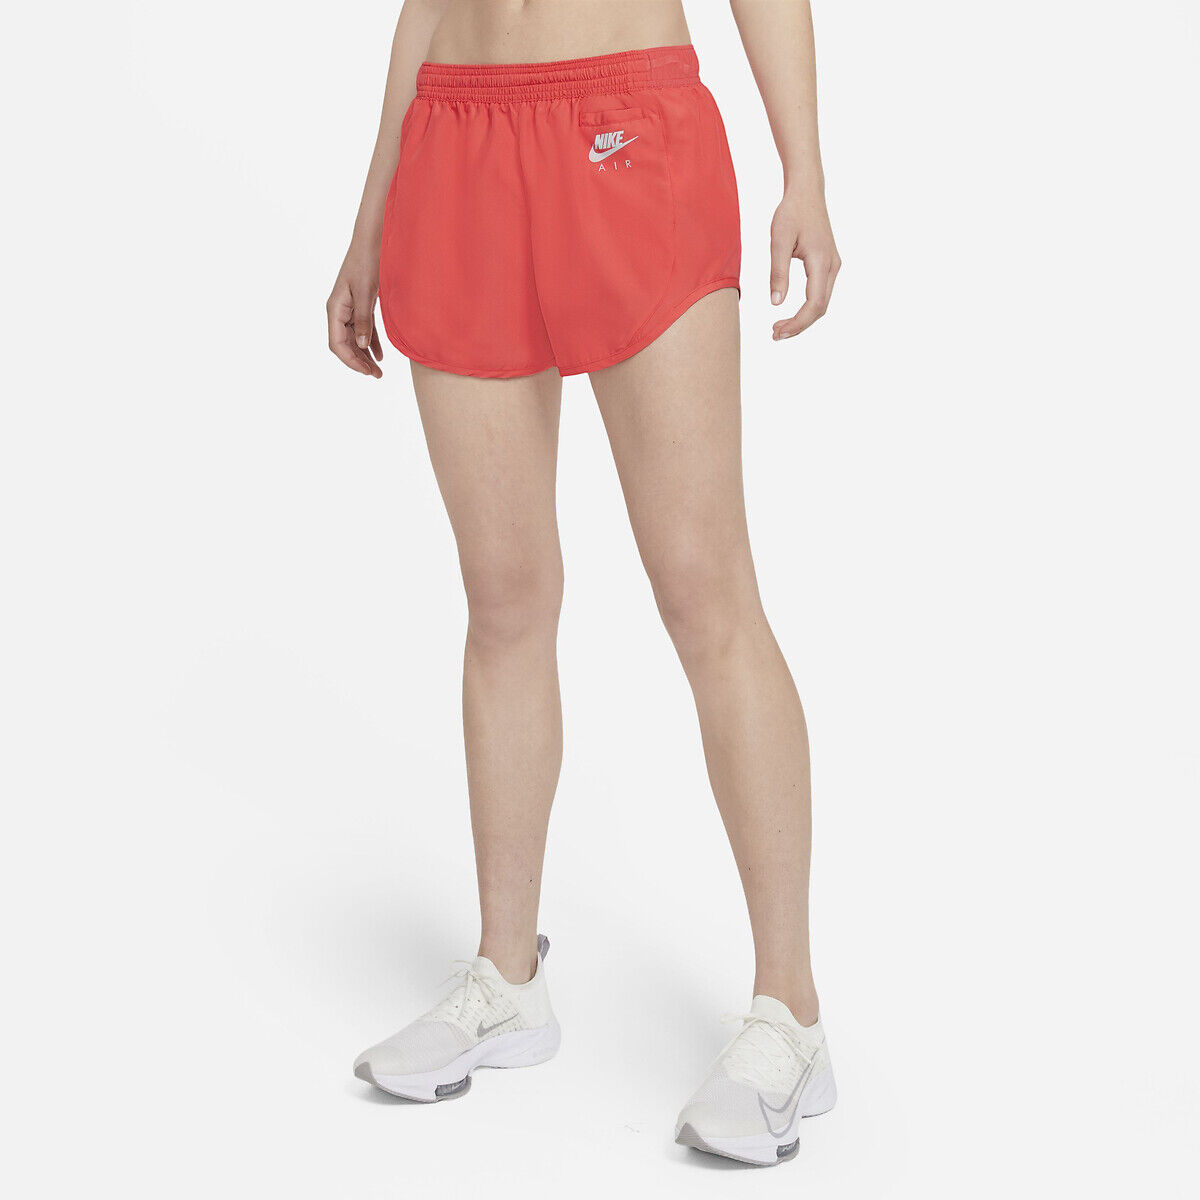 NIKE Running-Shorts mit reflektierendem Detail ORANGE